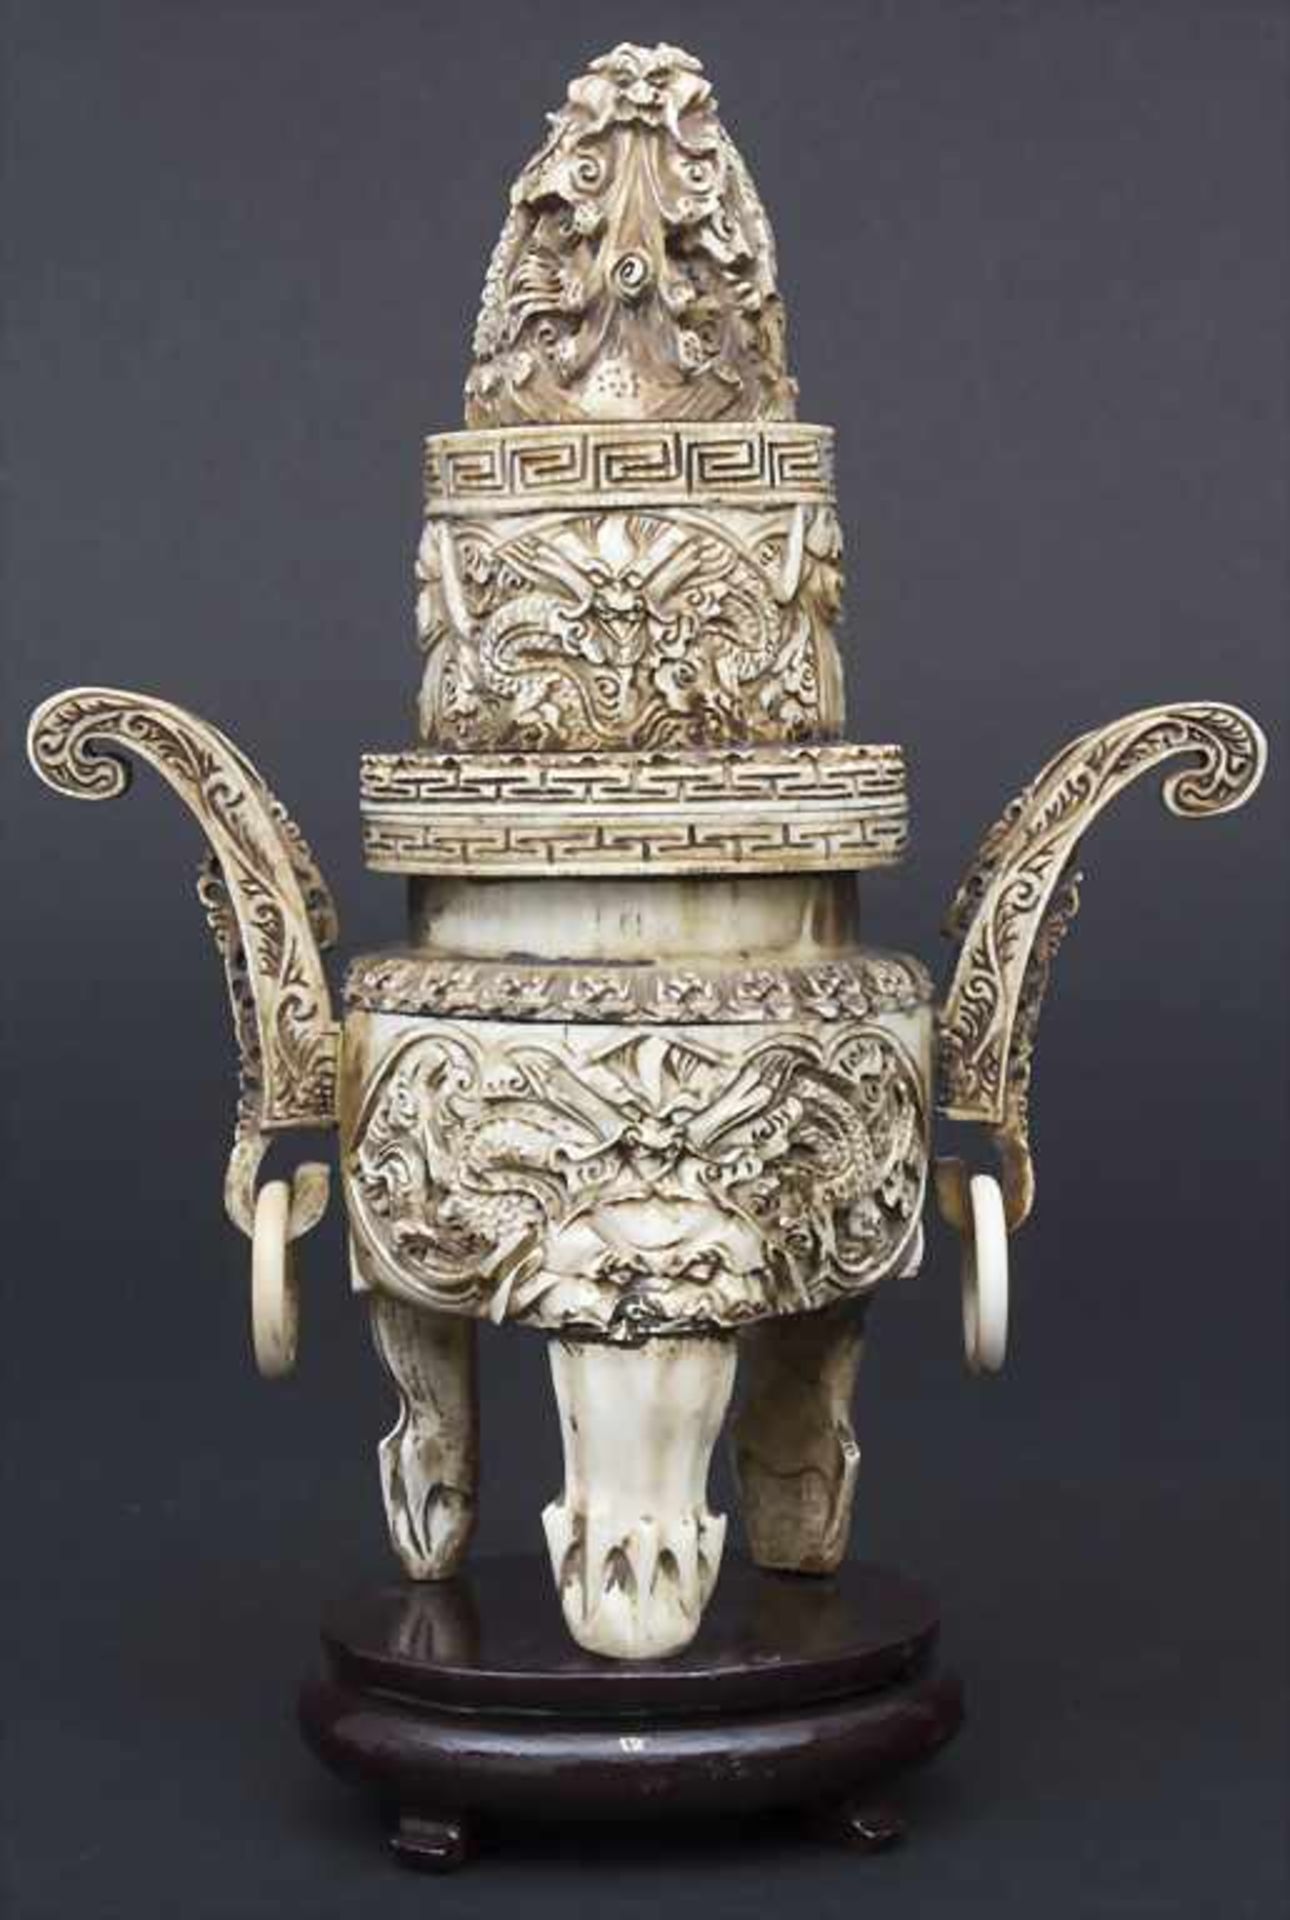 Räuchergefäß mit Drachendekor / An incense burner with dragons, China, um 1900Material: Elfenbein, - Bild 5 aus 11